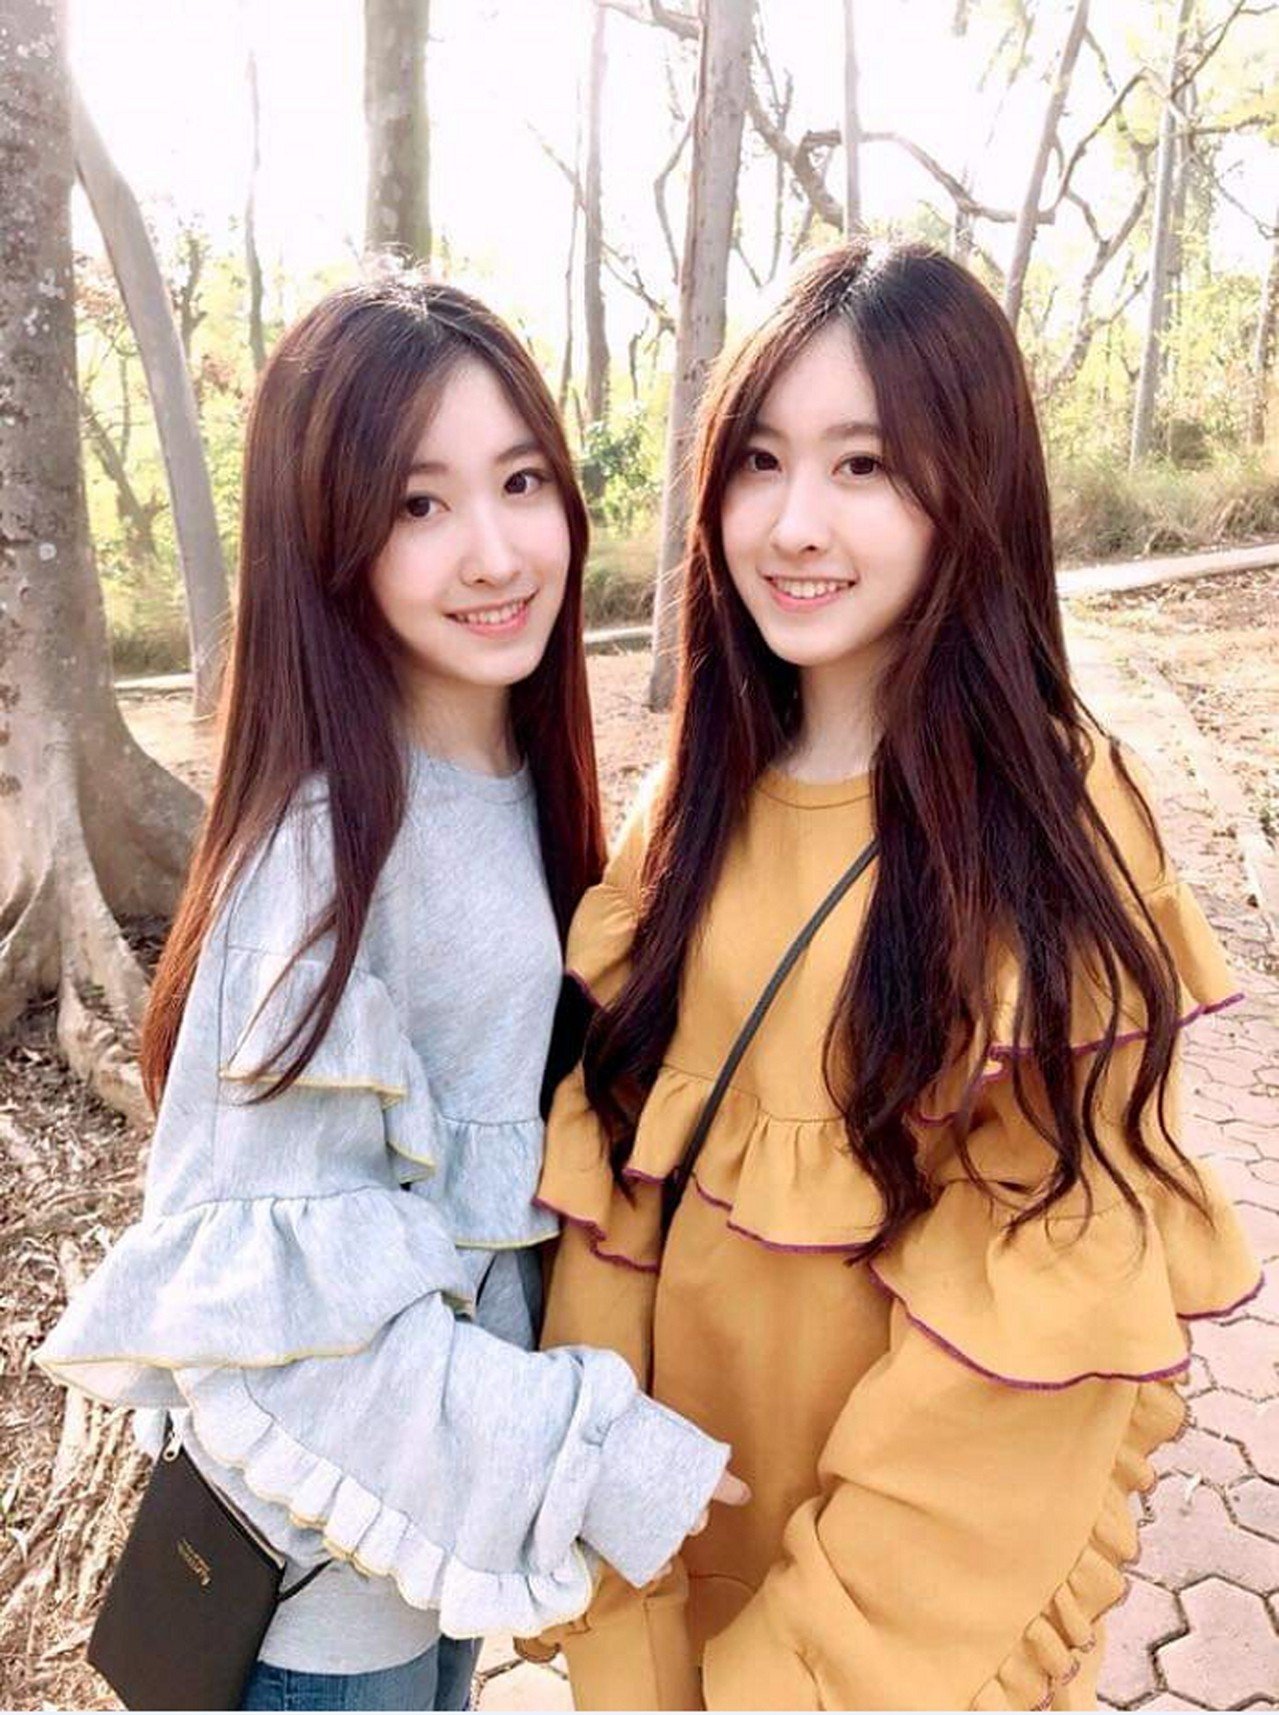 舞蹈冠軍雙胞胎姐妹花周玗希、周玗函錄取清華大學拾穗計畫。圖/清華大學提供